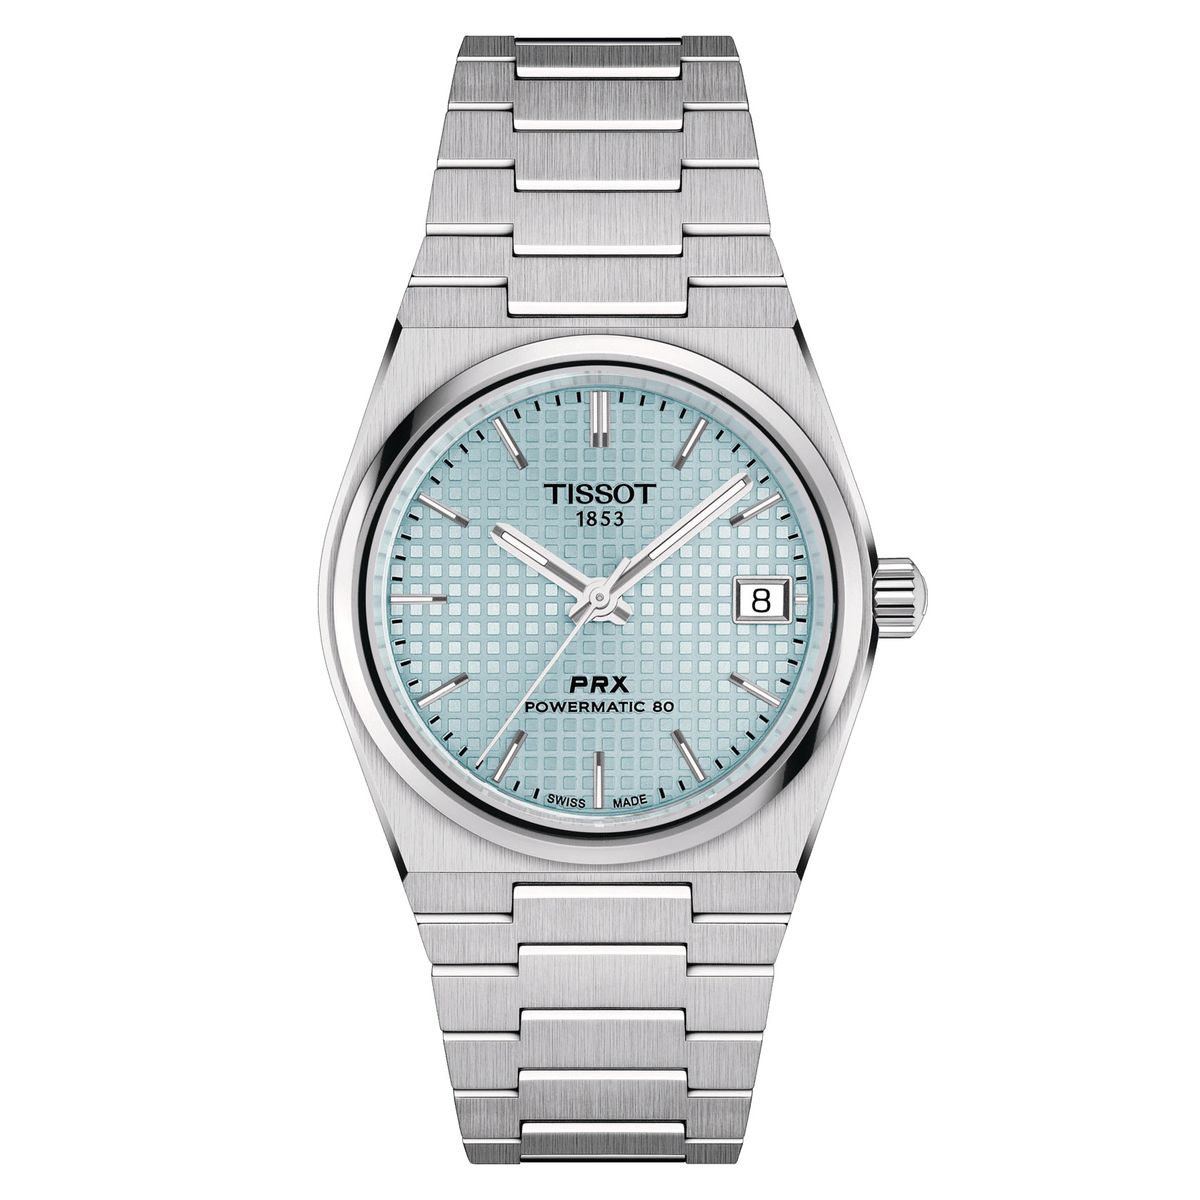 ティソ TISSOT T137.207.11.351.00 PRX オートマチック POWERMATIC 80 35mm 国内正規品 腕時計